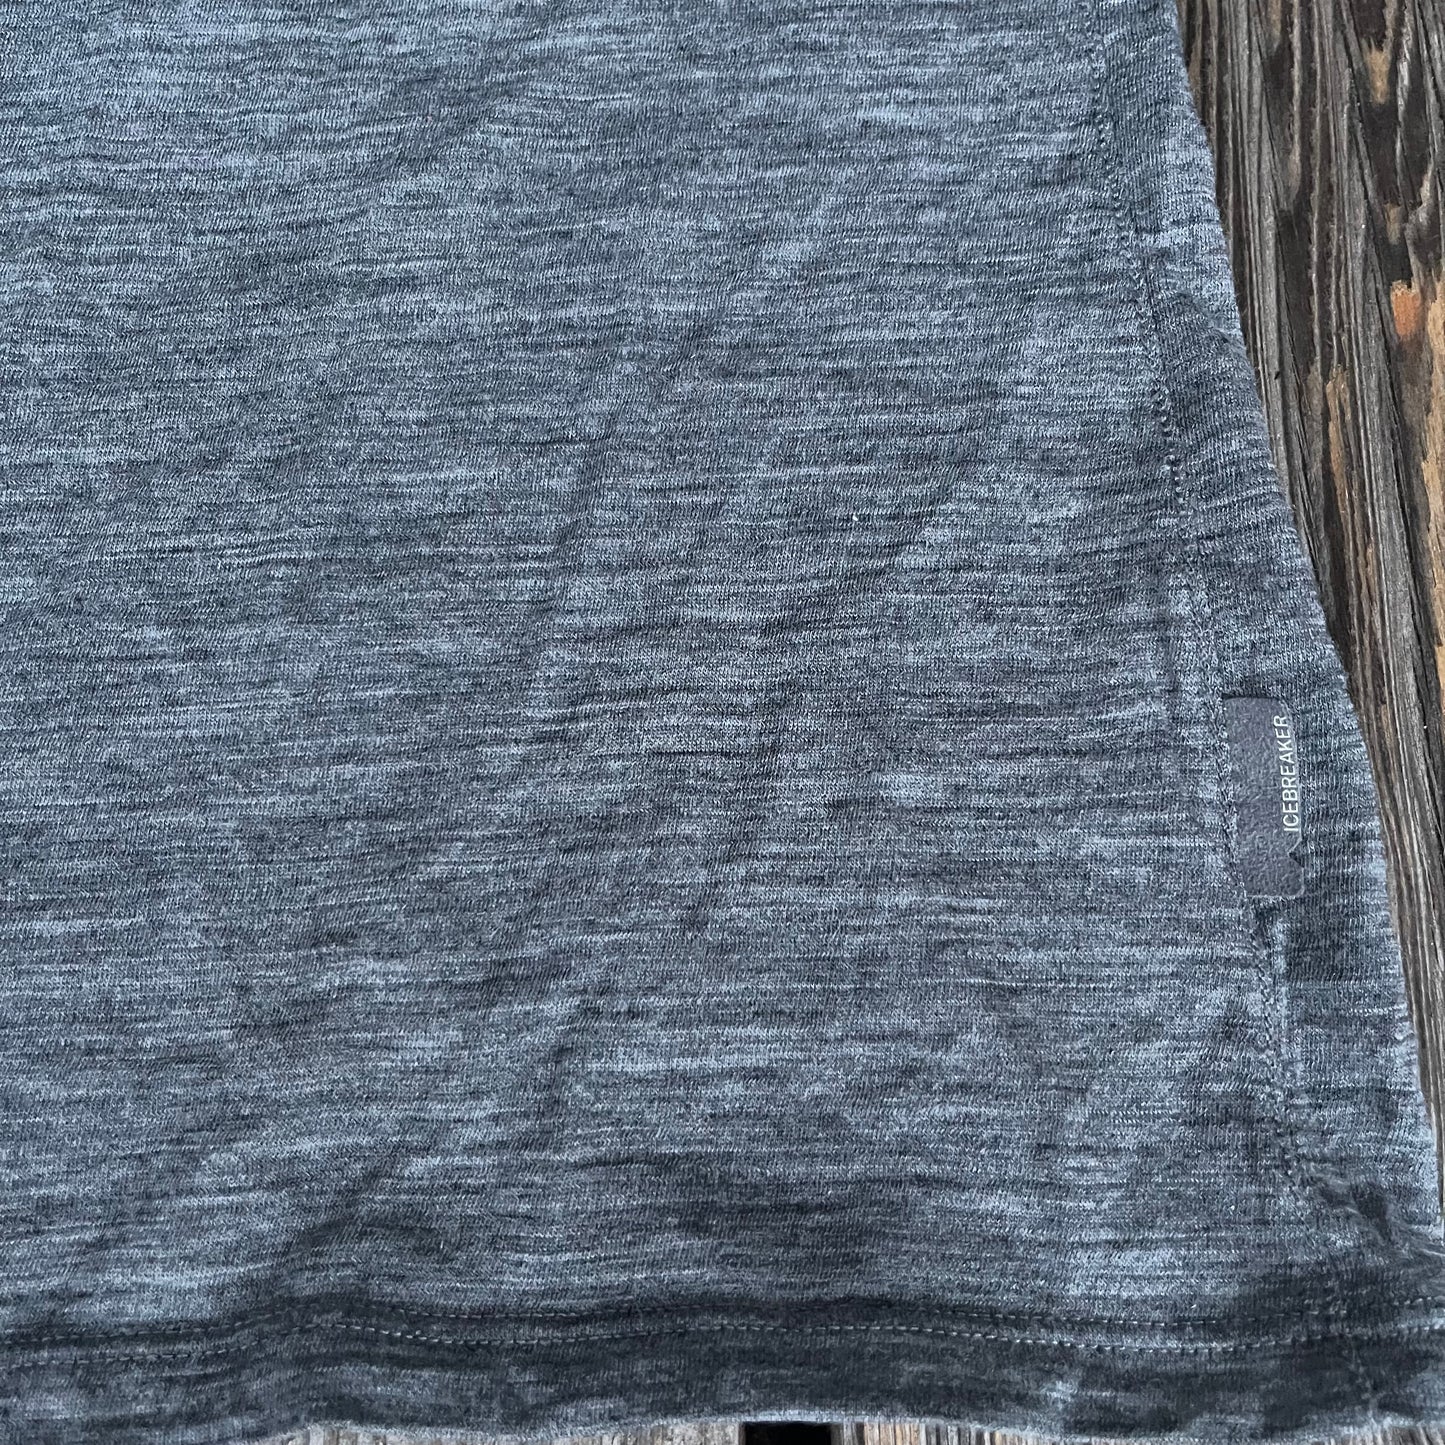 T-Shirt von Icebreaker Merino 150 (S Damen) grau mit Print